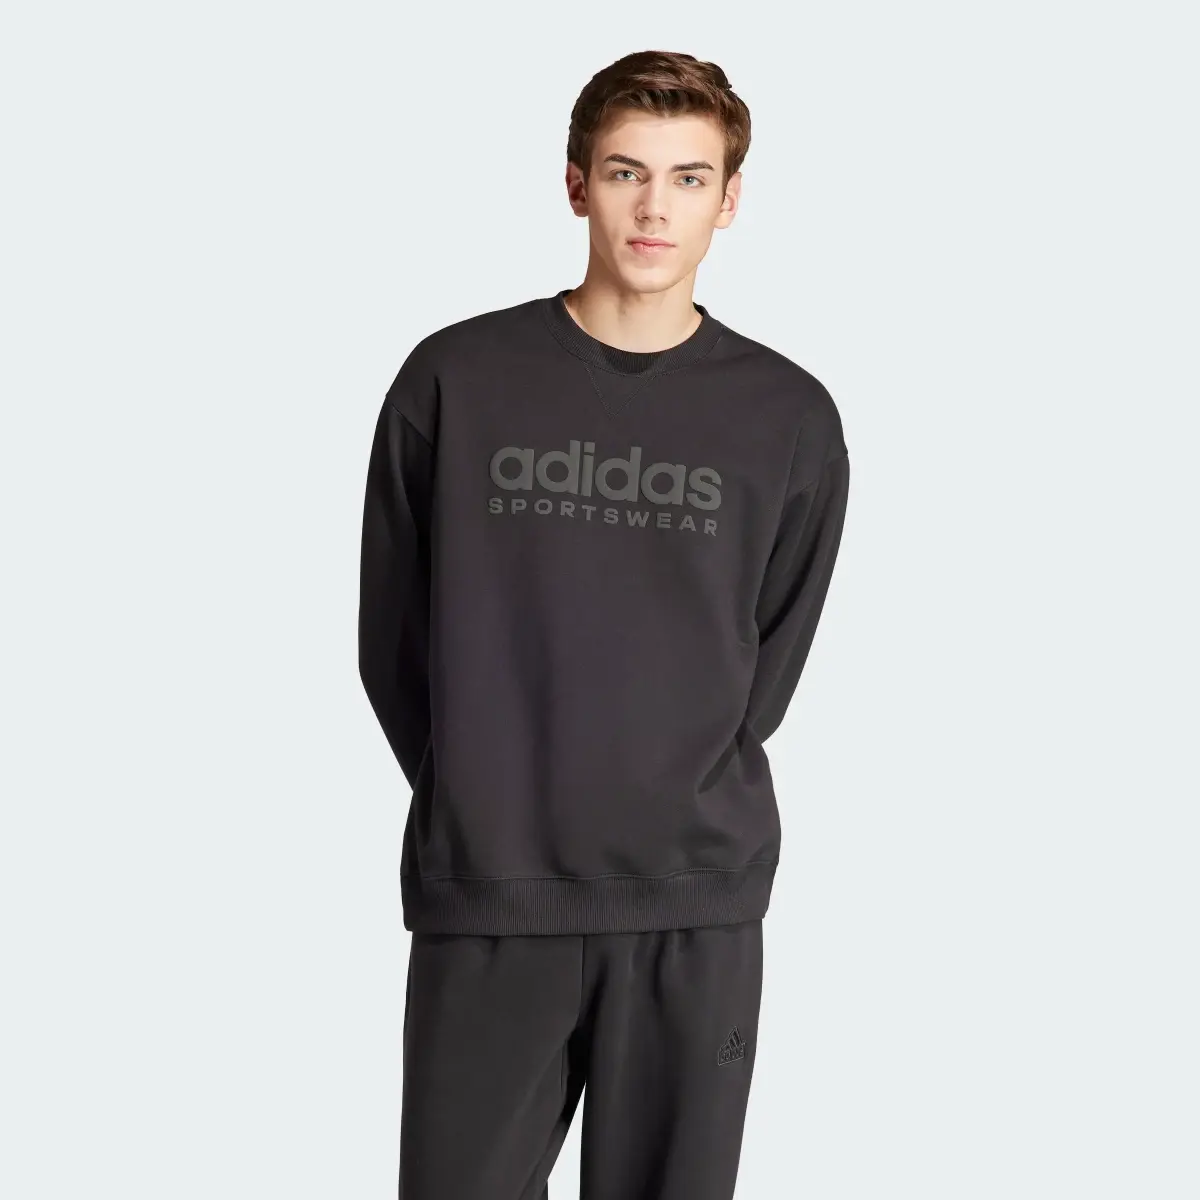 Adidas ALL SZN Fleece Graphic Sweatshirt. 2